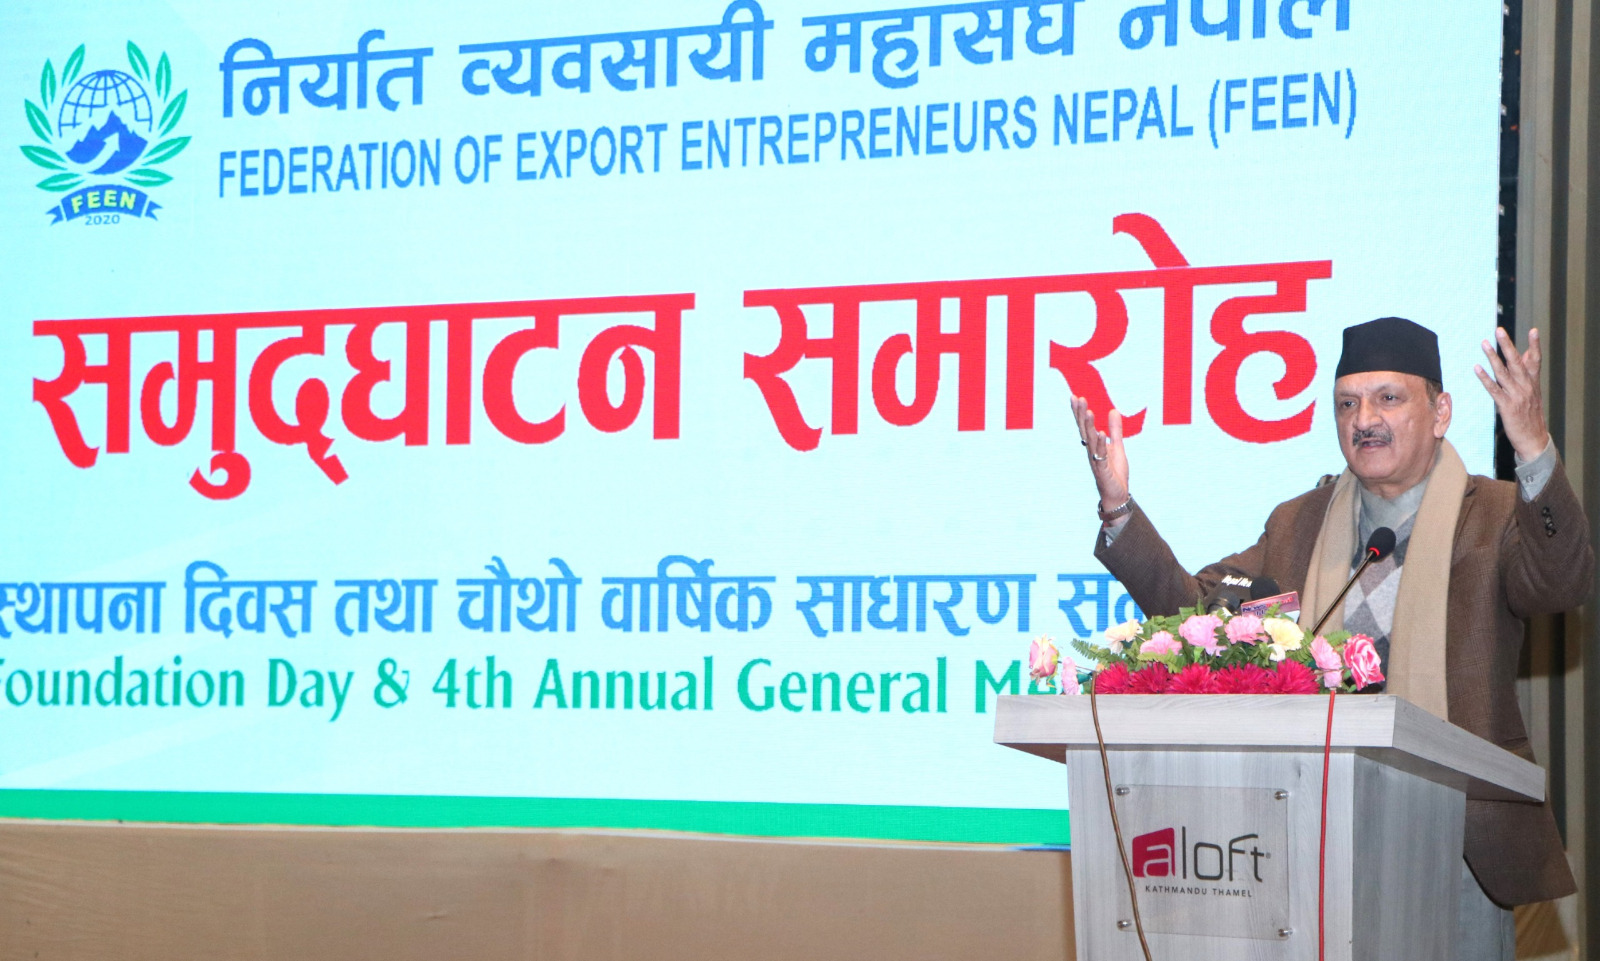 निर्यातका लागि नेपाली उत्पादनहरु मौलिक हुनुपर्नेमा अर्थमन्त्री डा. महतकाे जाेड